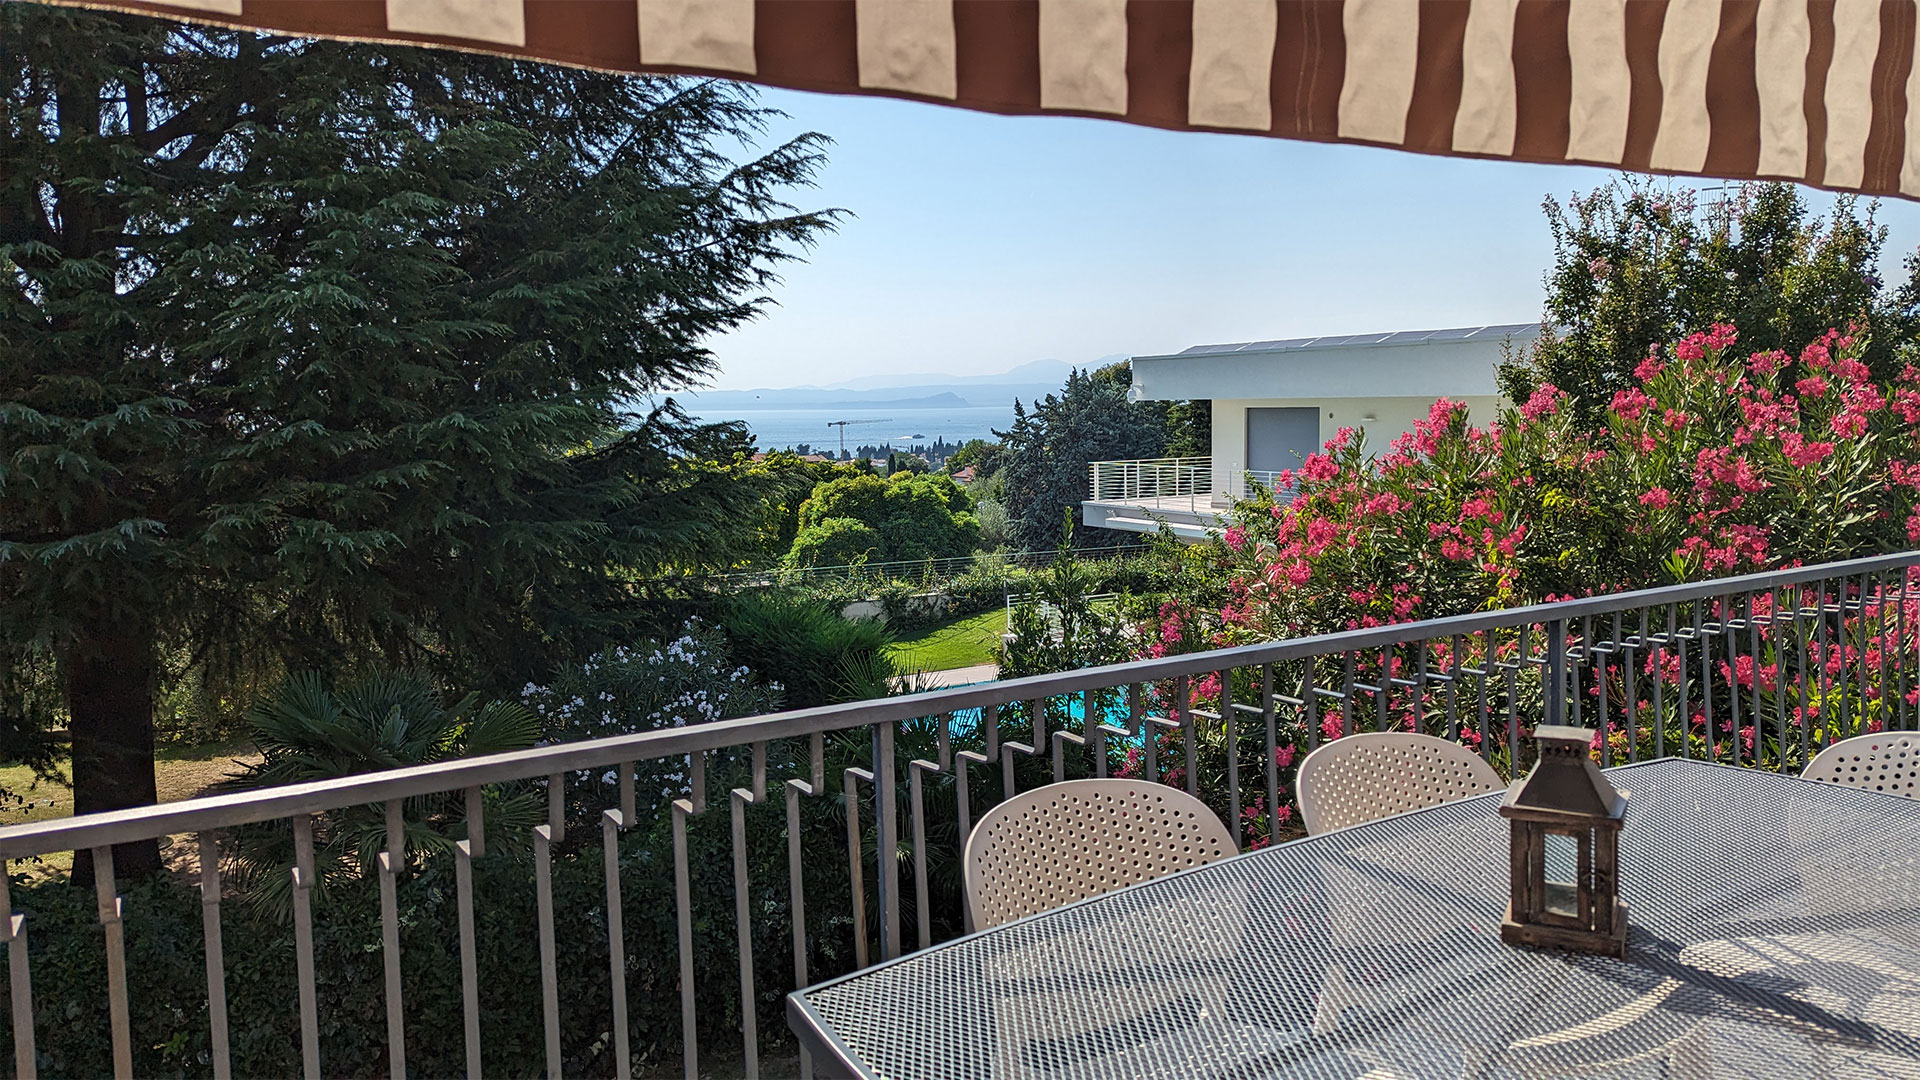 reserviert - Villa in bester Lage von Bardolino mit Blick auf den Gardasee